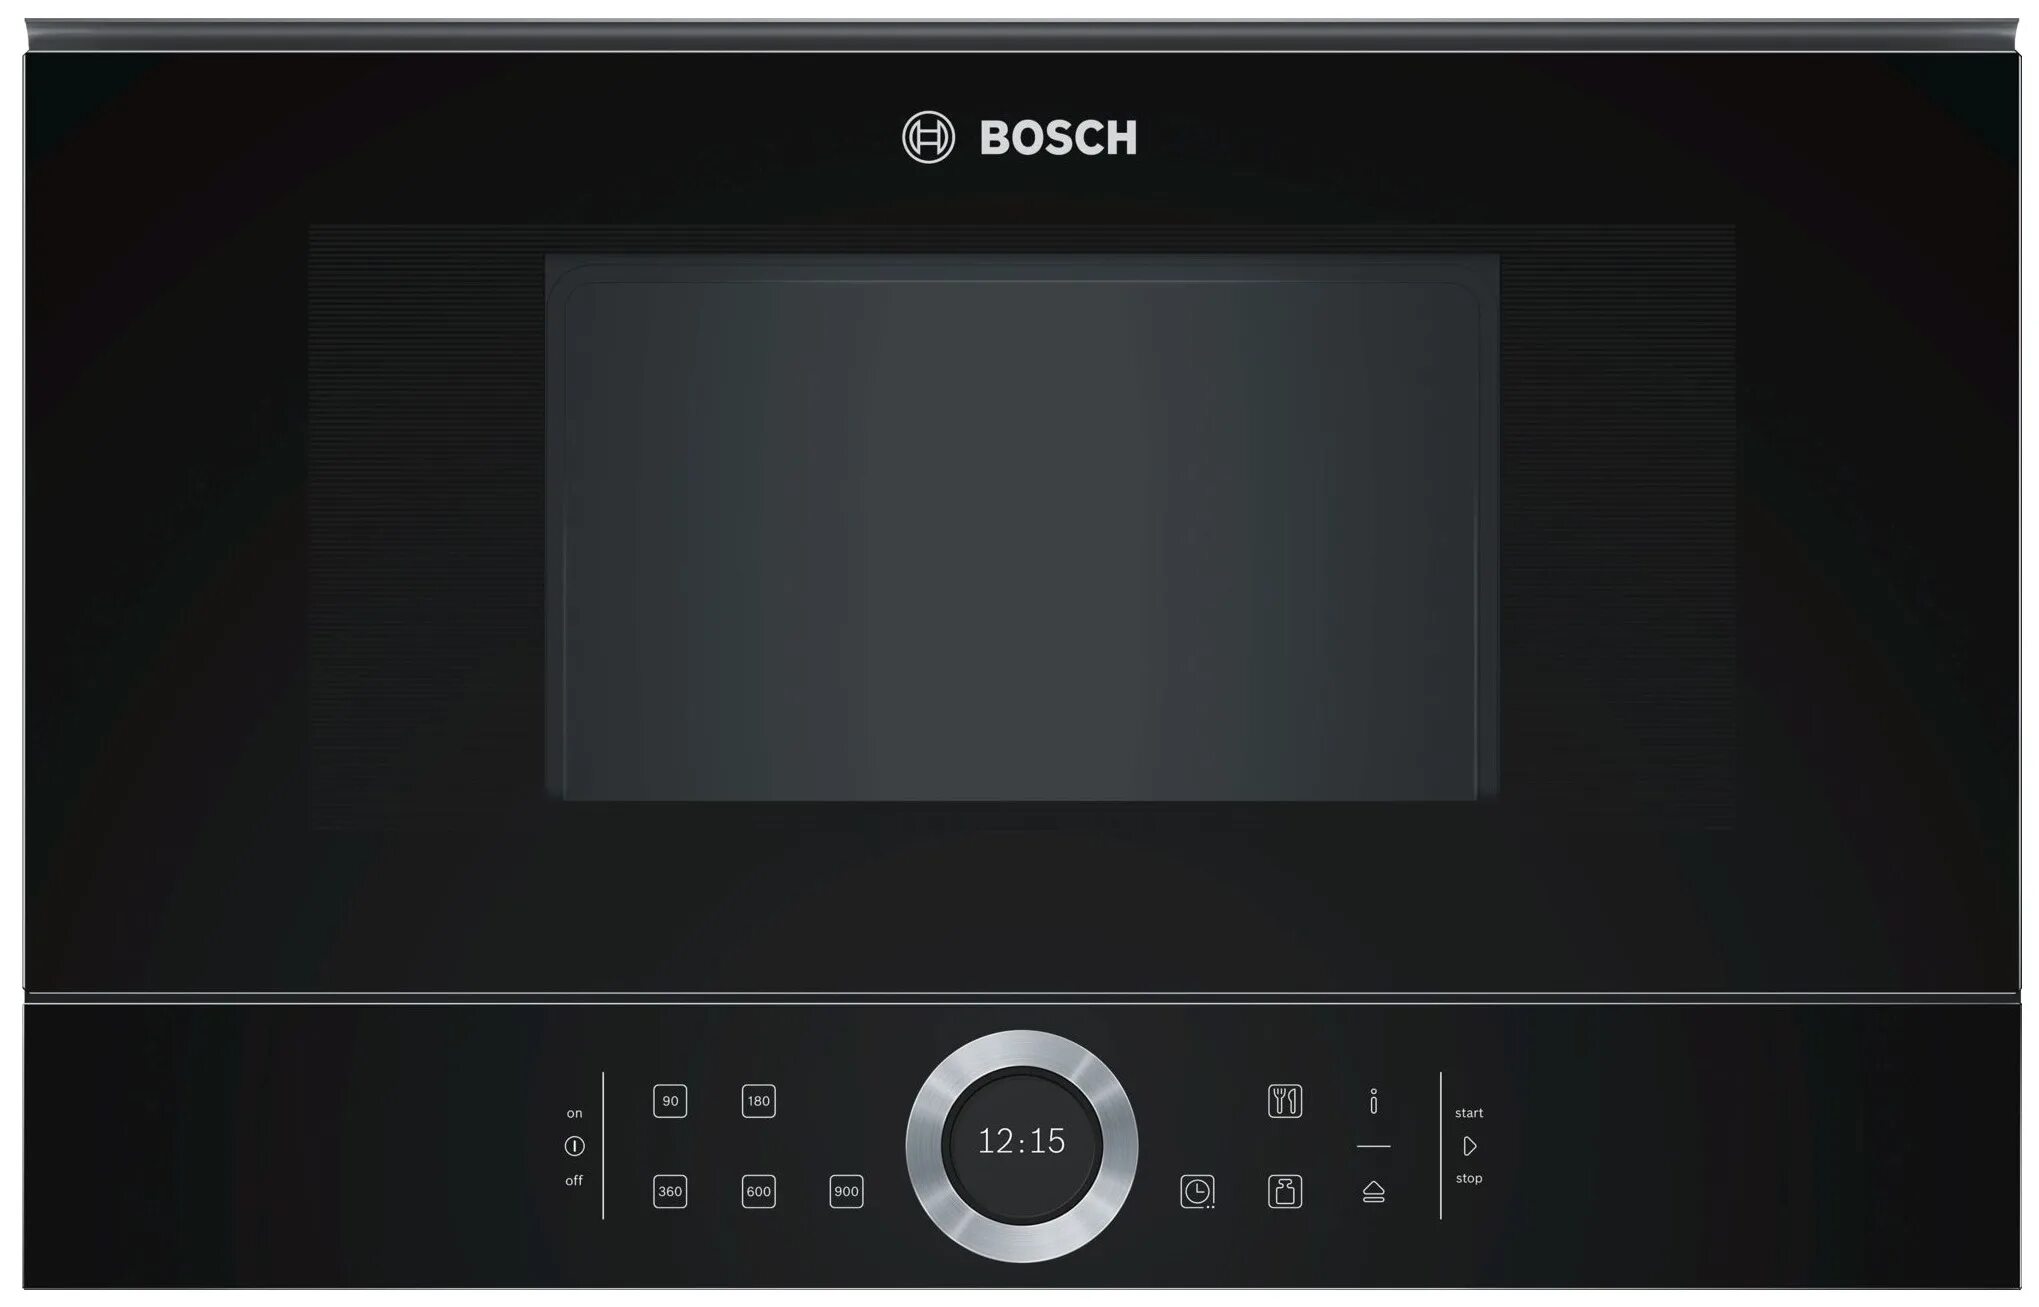 Встроенная микроволновая печь bosch черная. Bosch bfl634gb1. Встраиваемая микроволновая печь Bosch bfl634. Встраиваемая микроволновая печь Bosch serie 8. Микроволновая печь встраиваемая Bosch bfl623mc3.